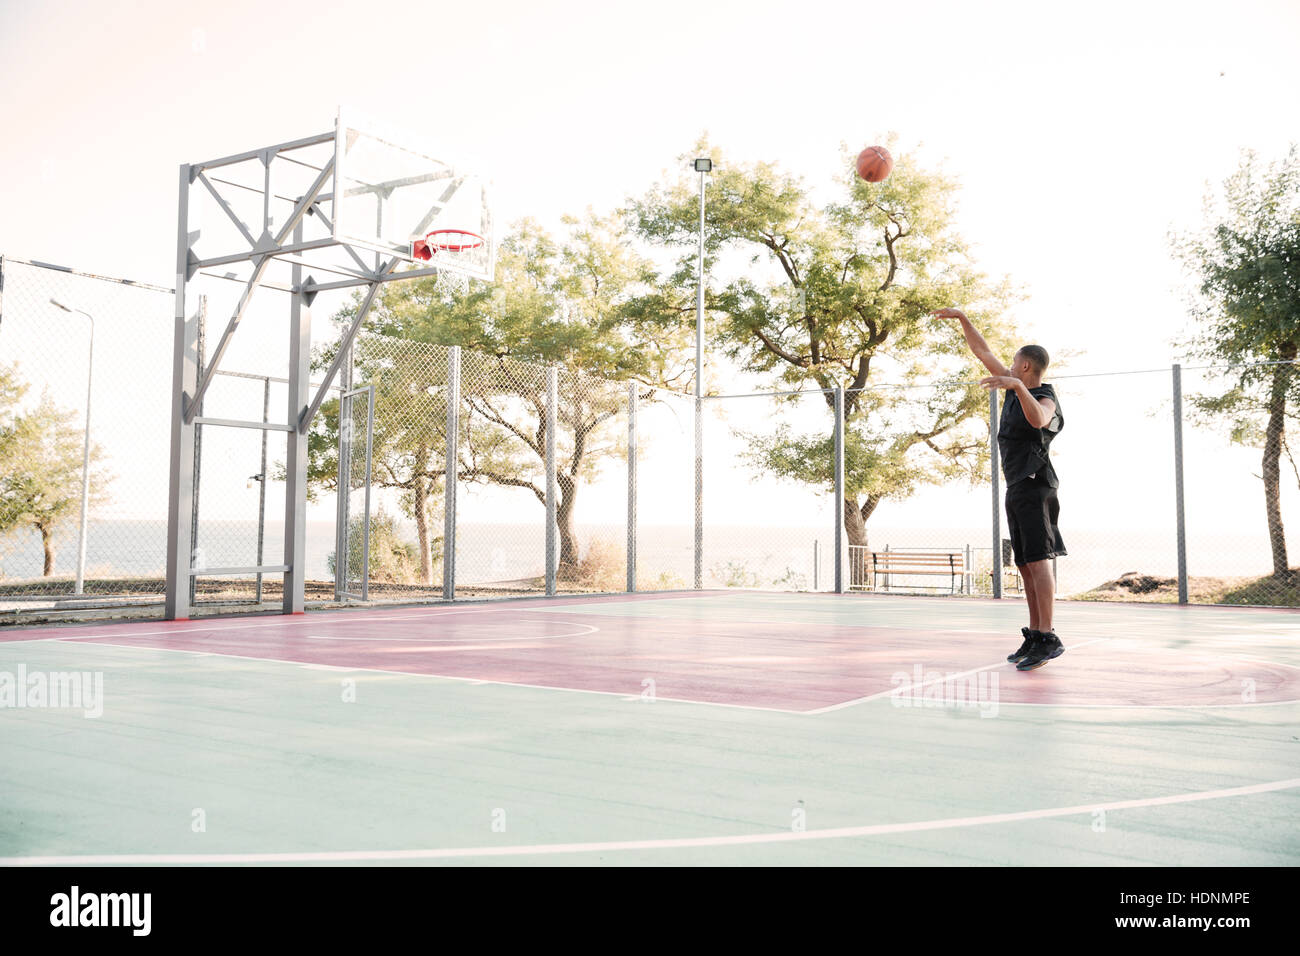 Imagen del joven jugador de baloncesto practicando en la calle con árboles de fondo Foto de stock